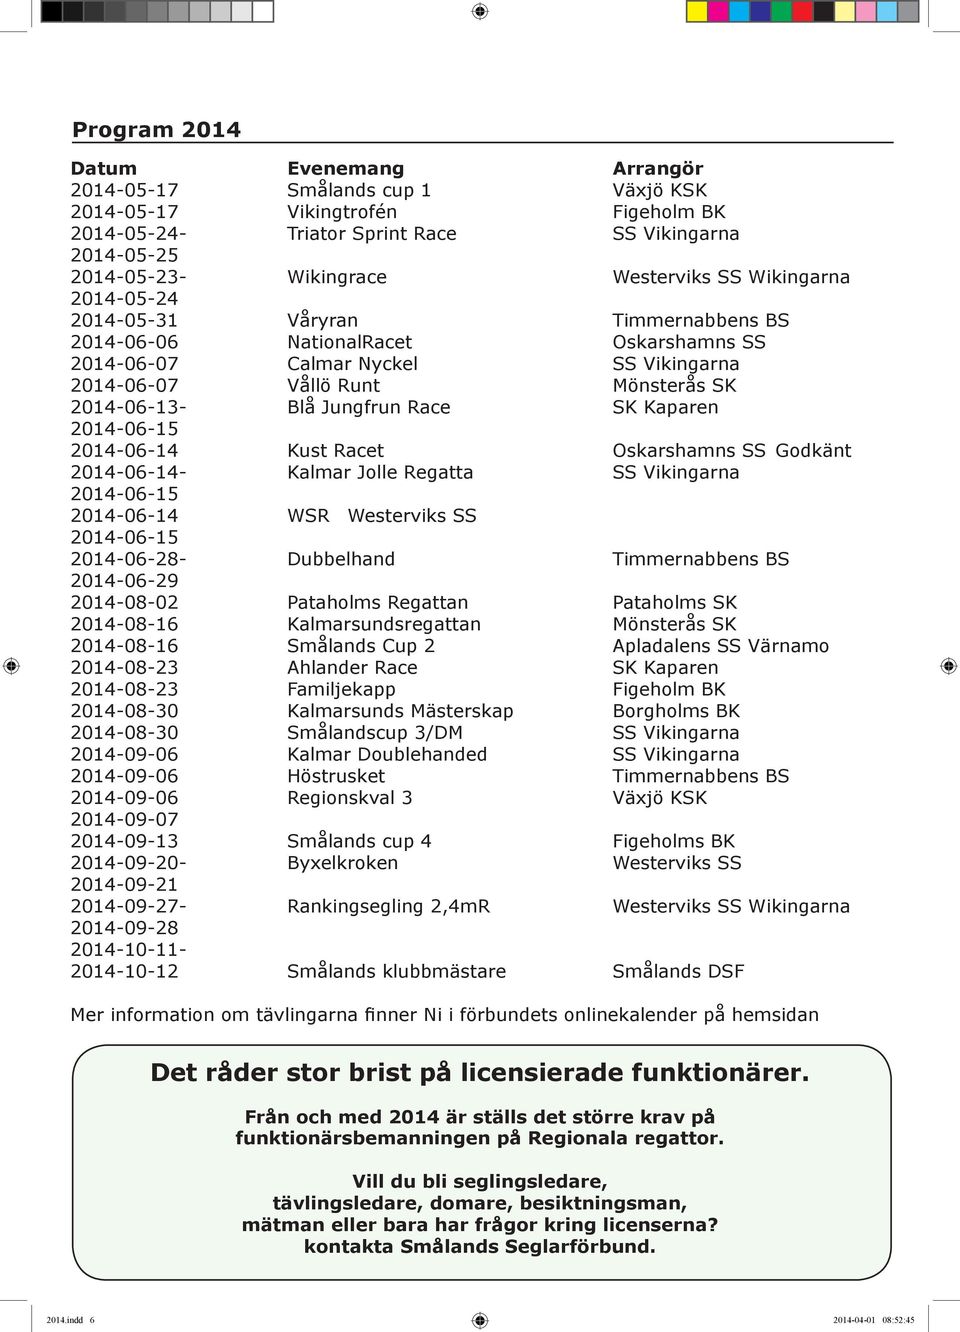 Blå Jungfrun Race SK Kaparen 2014-06-15 2014-06-14 Kust Racet Oskarshamns SS Godkänt 2014-06-14- Kalmar Jolle Regatta SS Vikingarna 2014-06-15 2014-06-14 WSR Westerviks SS 2014-06-15 2014-06-28-